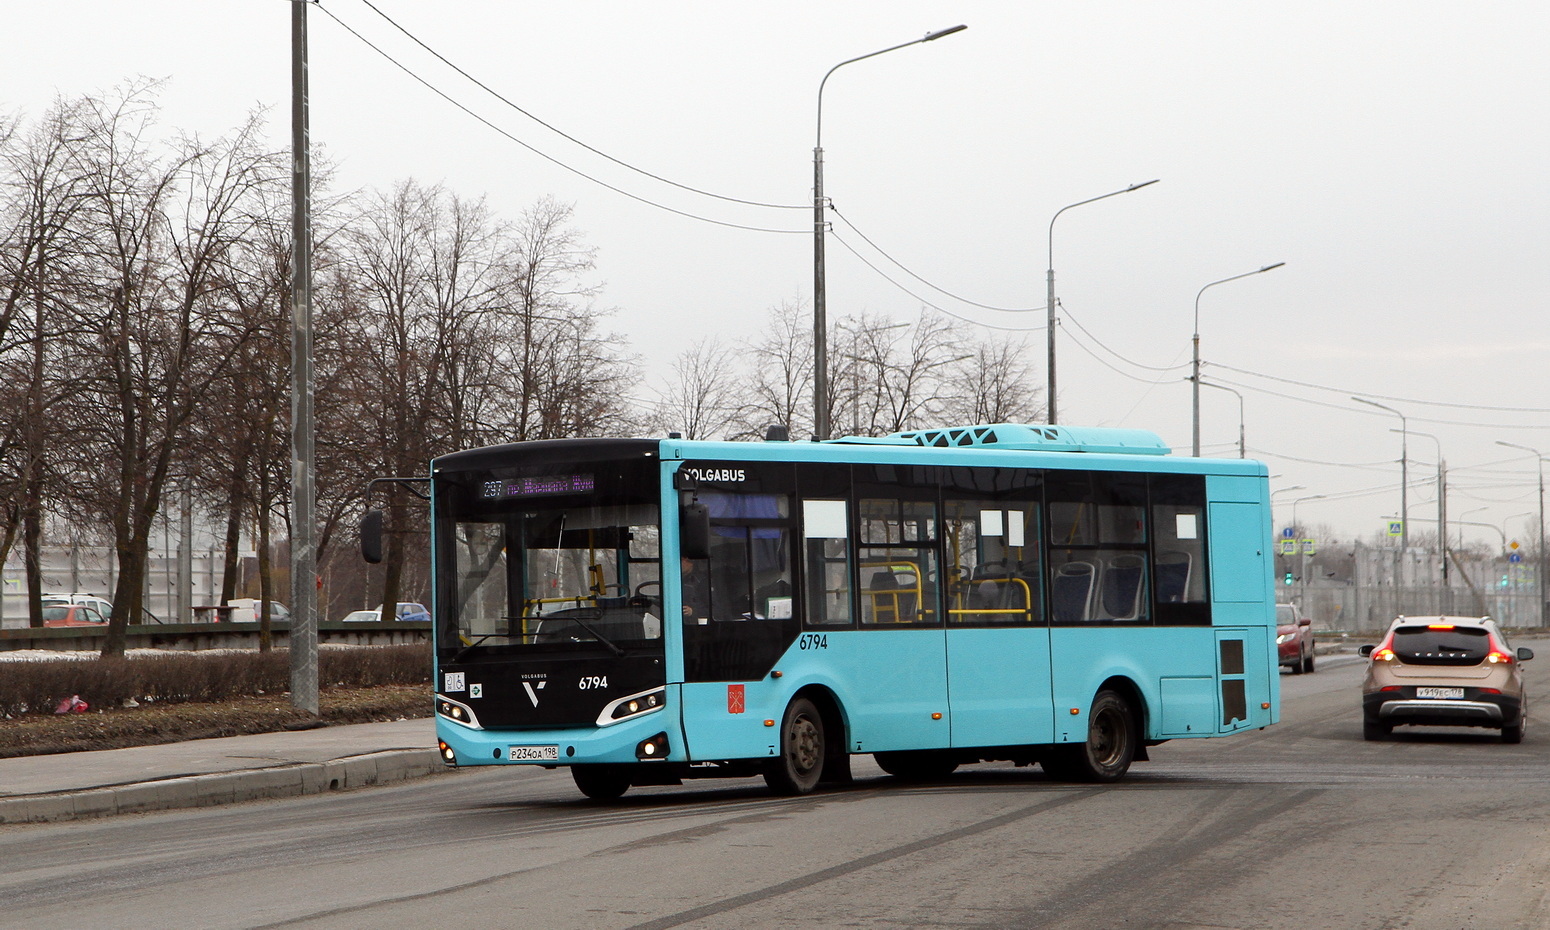 Sankt Peterburgas, Volgabus-4298.G4 (LNG) Nr. 6974